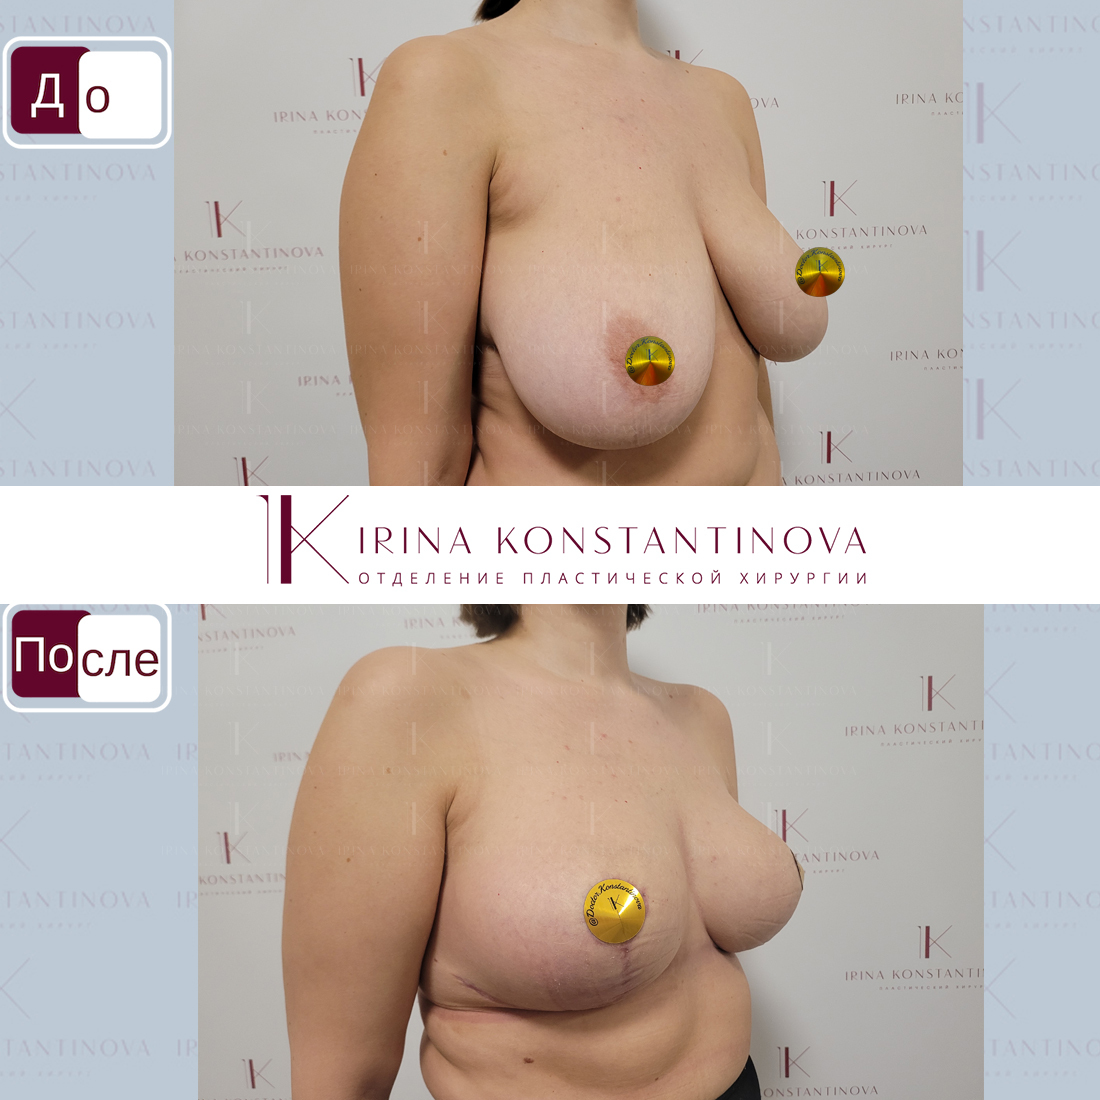 операция по уменьшения размера груди фото 36